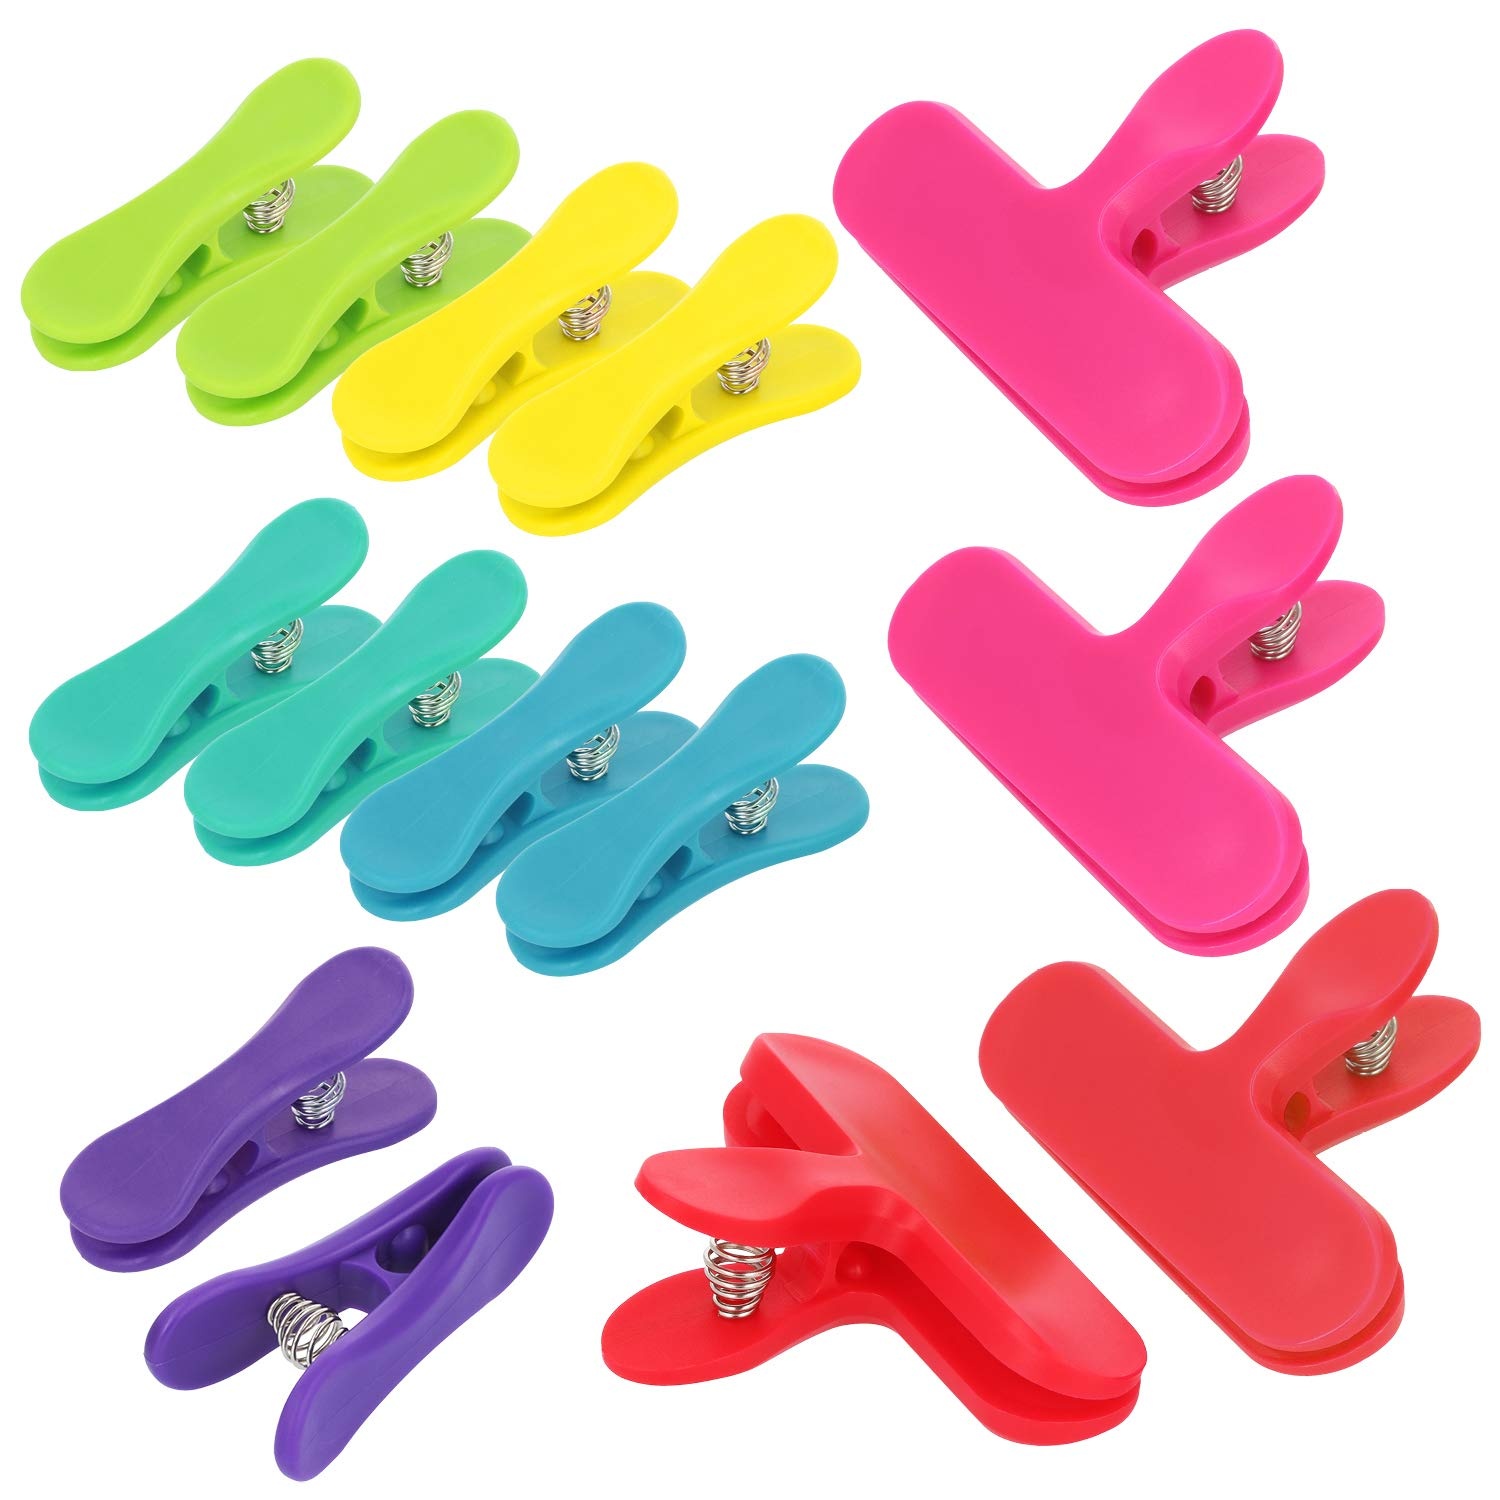 com-four® 14x Verschlussclips für Beutel - Verschlussklemmen aus Kunststoff - Tüten Clips zum Verschließen und Frischhalten (14 Stück - 7 Farben)